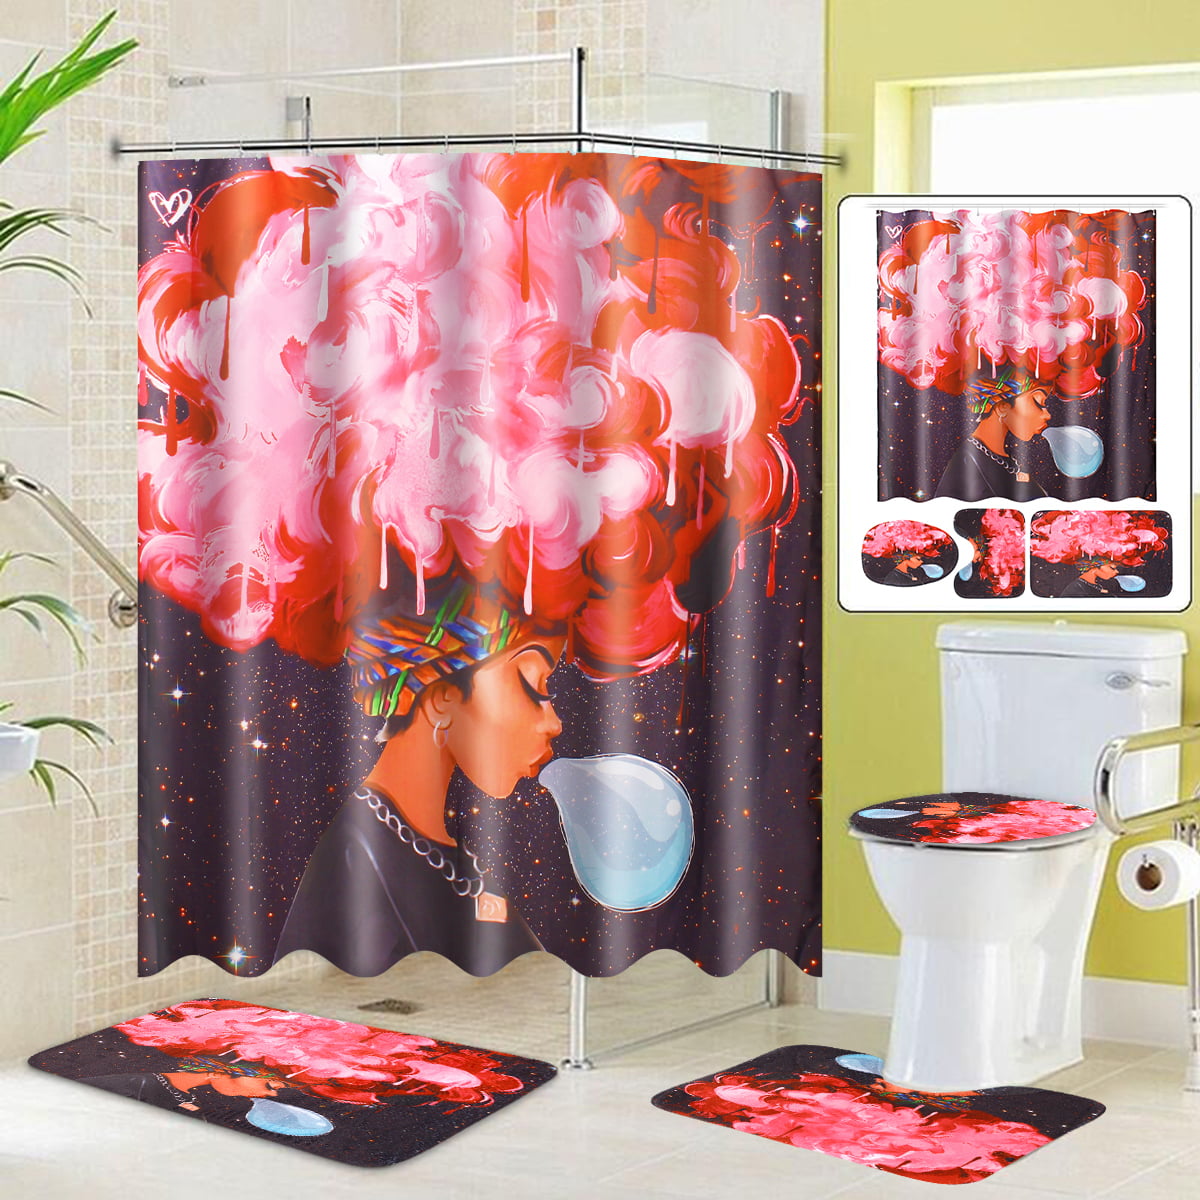 Elephant 3D Shower Curtain Bath Mat Toilet Cover Rug Funny Bathroom Decor Set 